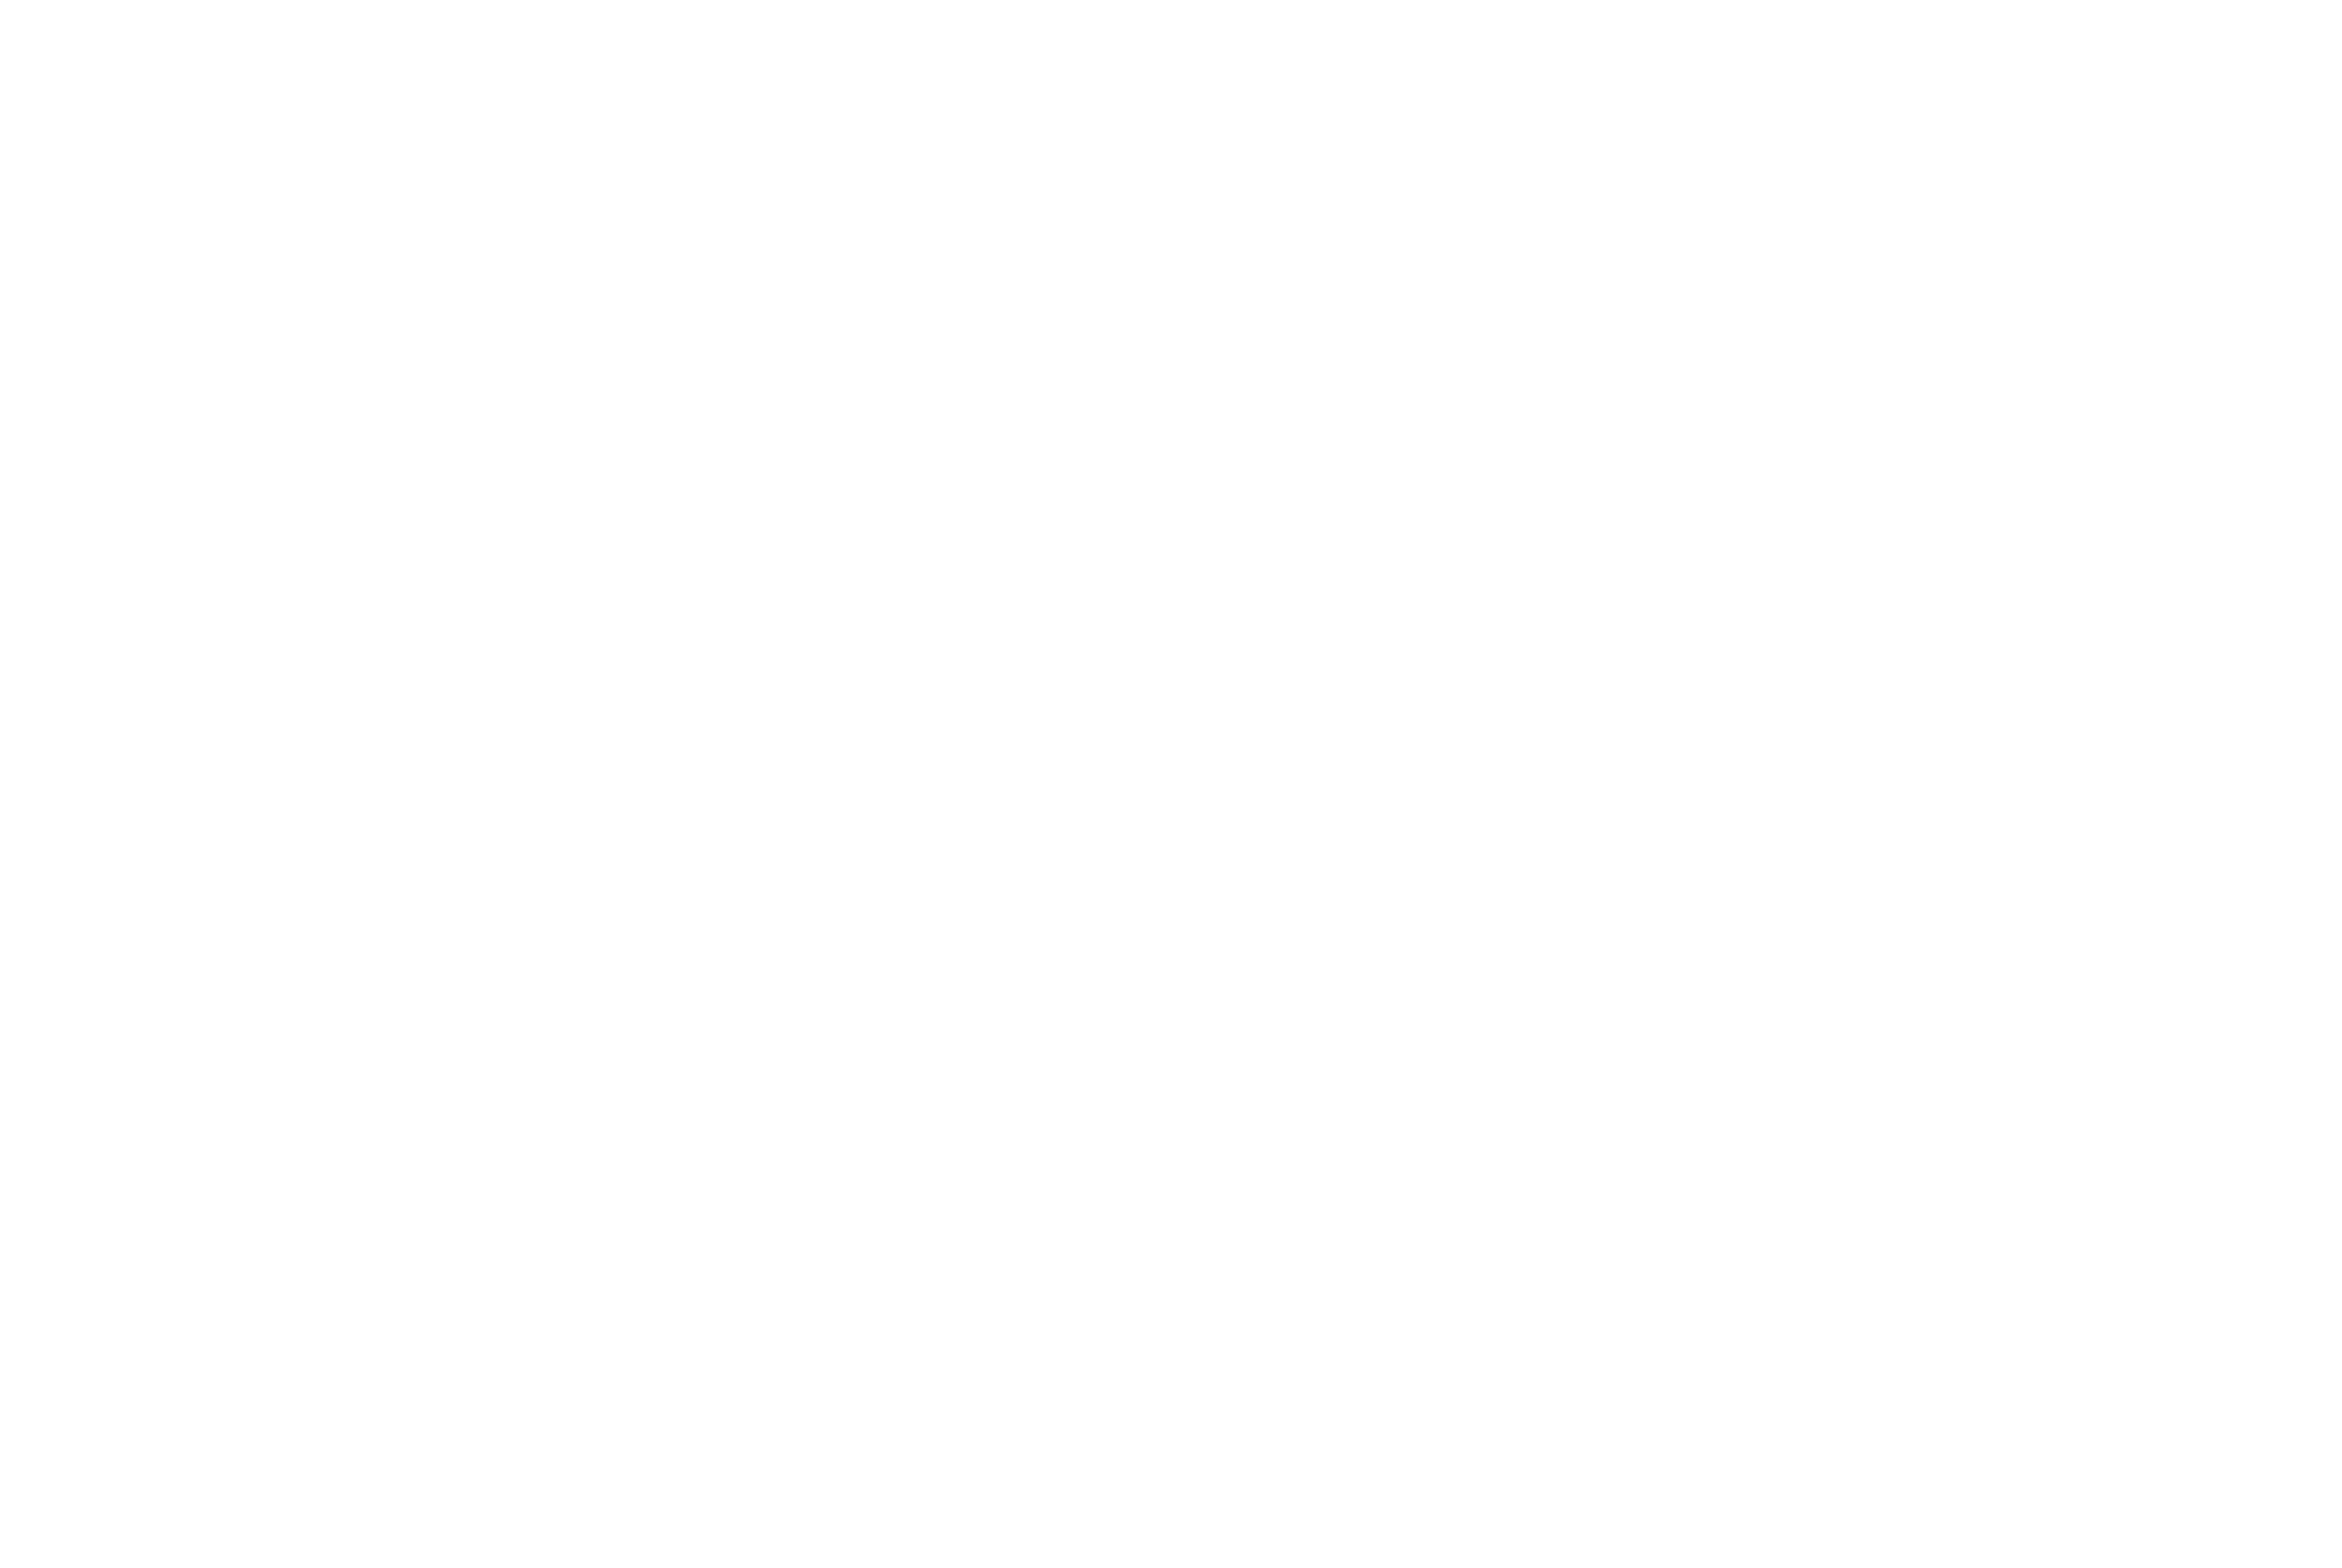 YGTK Communication